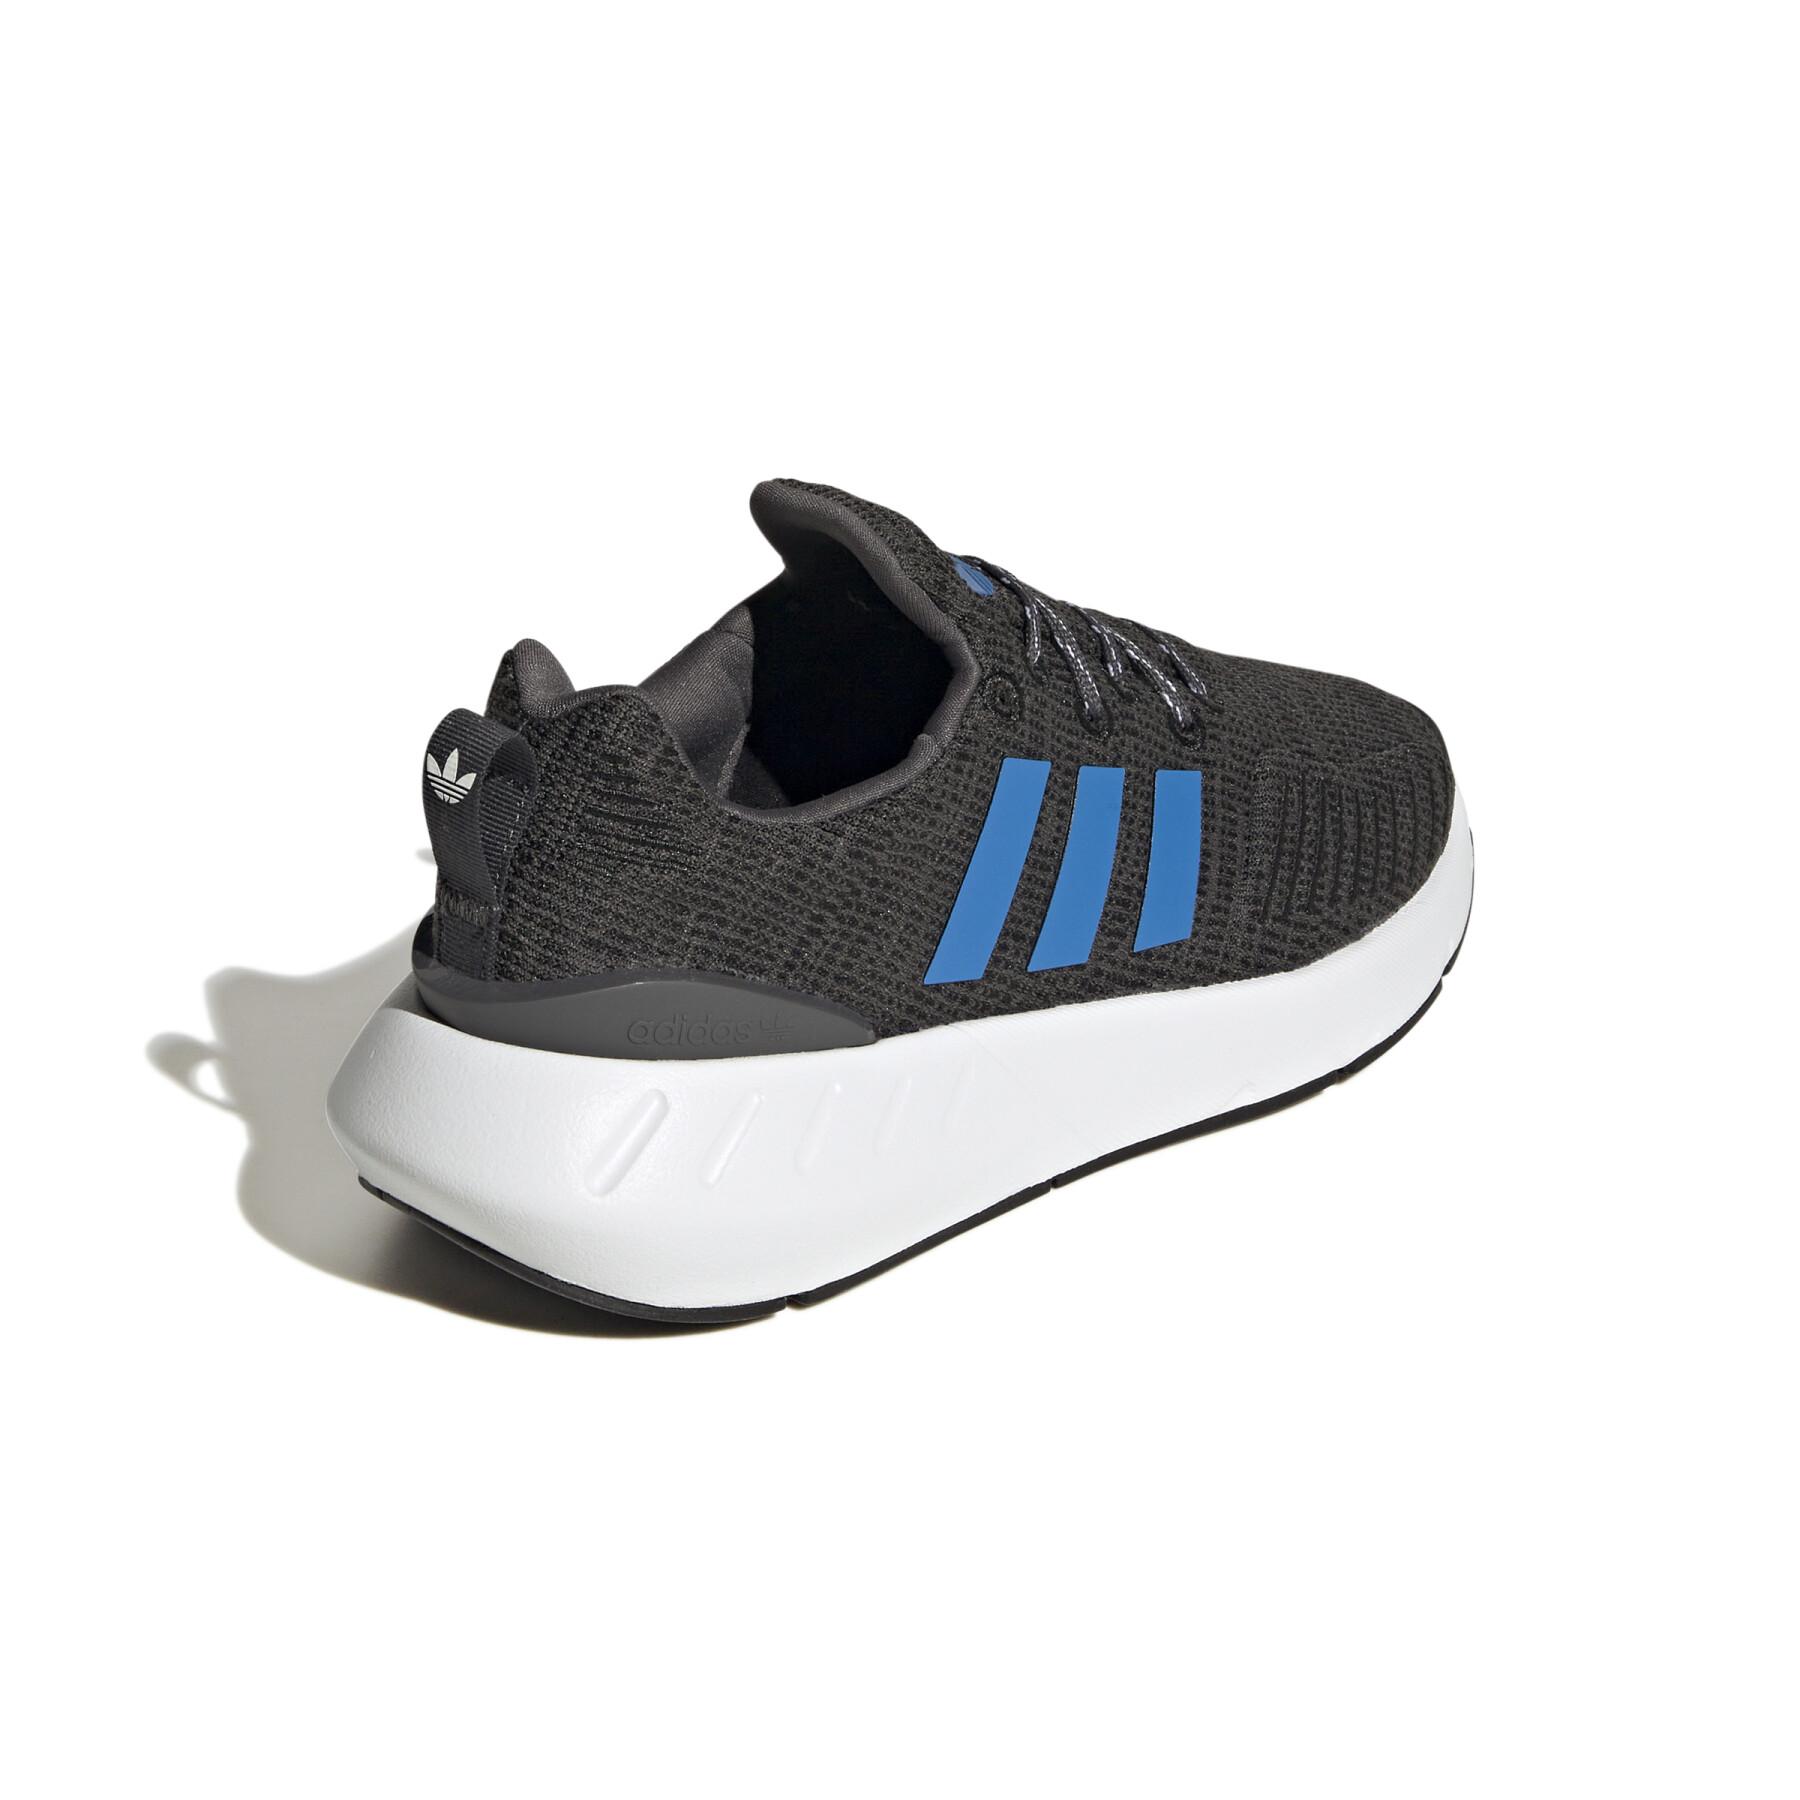 Children's sneakers adidas Swift Run 22